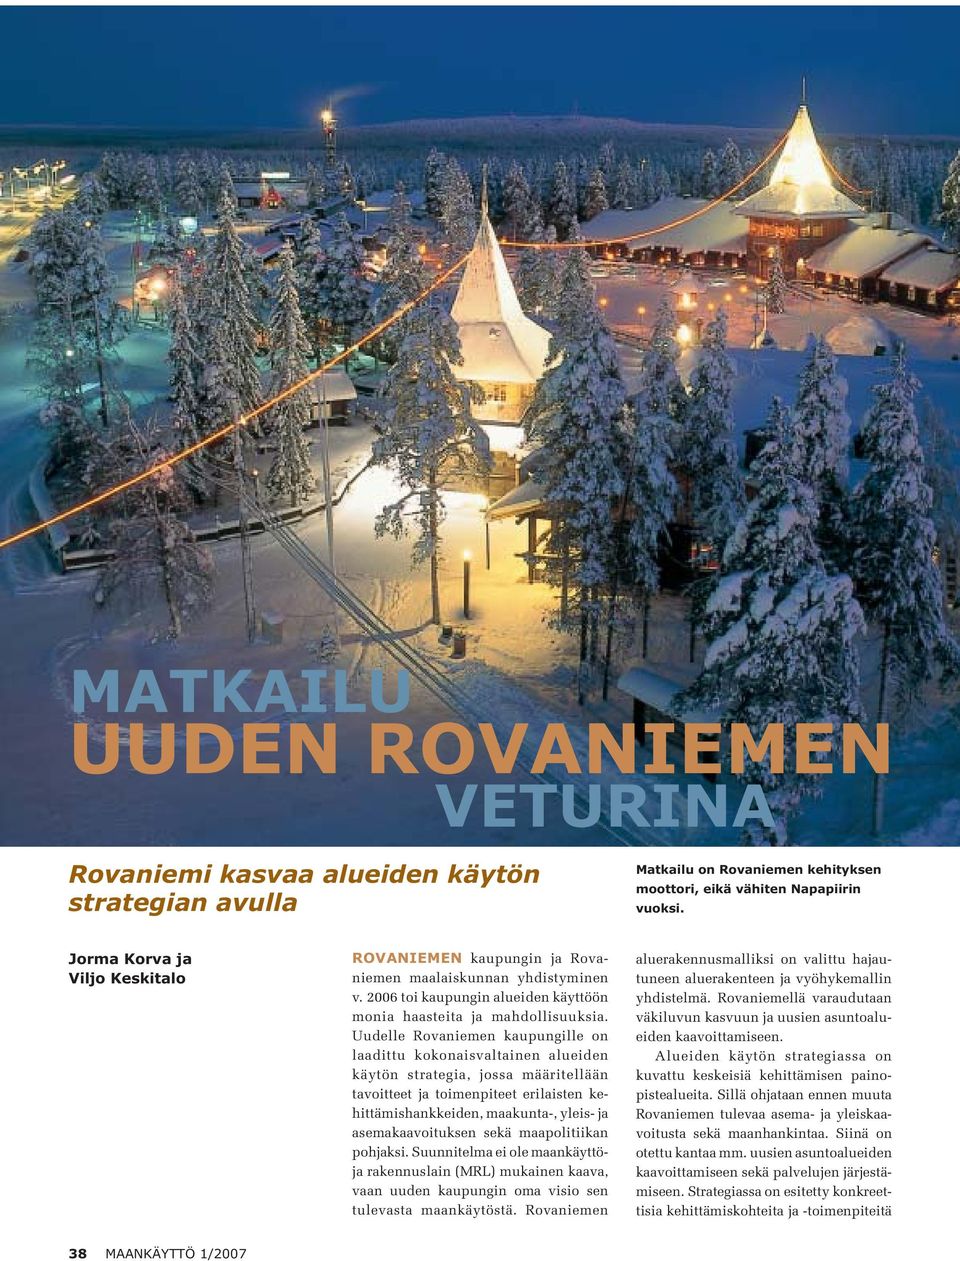 Uudelle Rovaniemen kaupungille on laadittu kokonaisvaltainen alueiden käytön strategia, jossa määritellään tavoitteet ja toimenpiteet erilaisten kehittämishankkeiden, maakunta-, yleis- ja